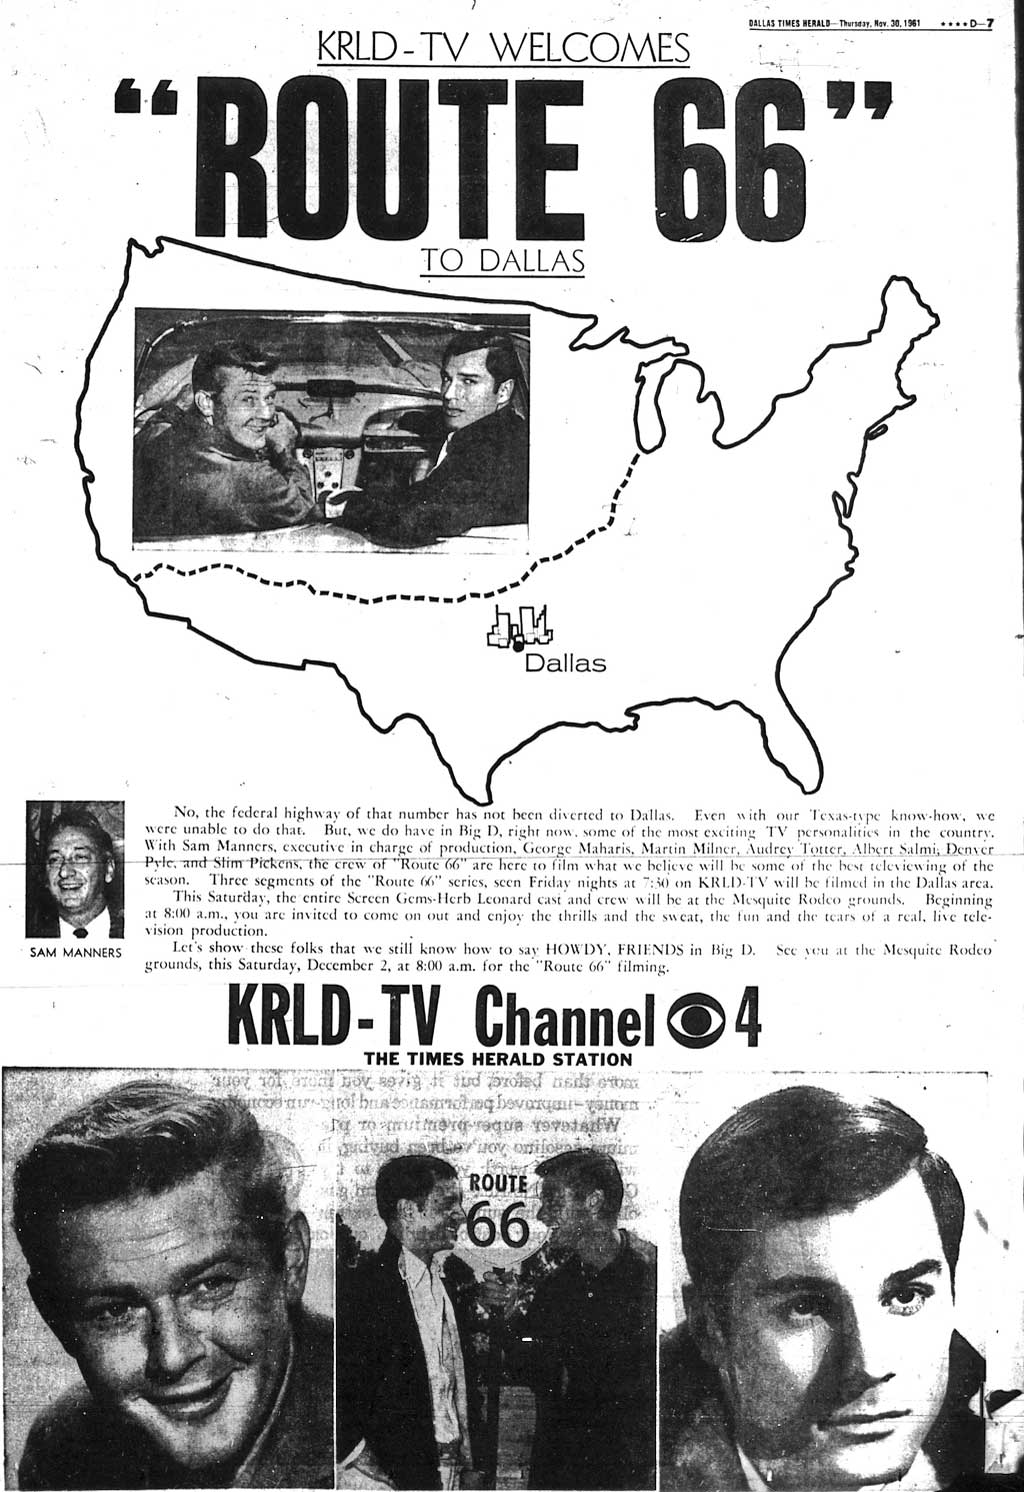 krld-tv-full-page-ad-11-30.jpg